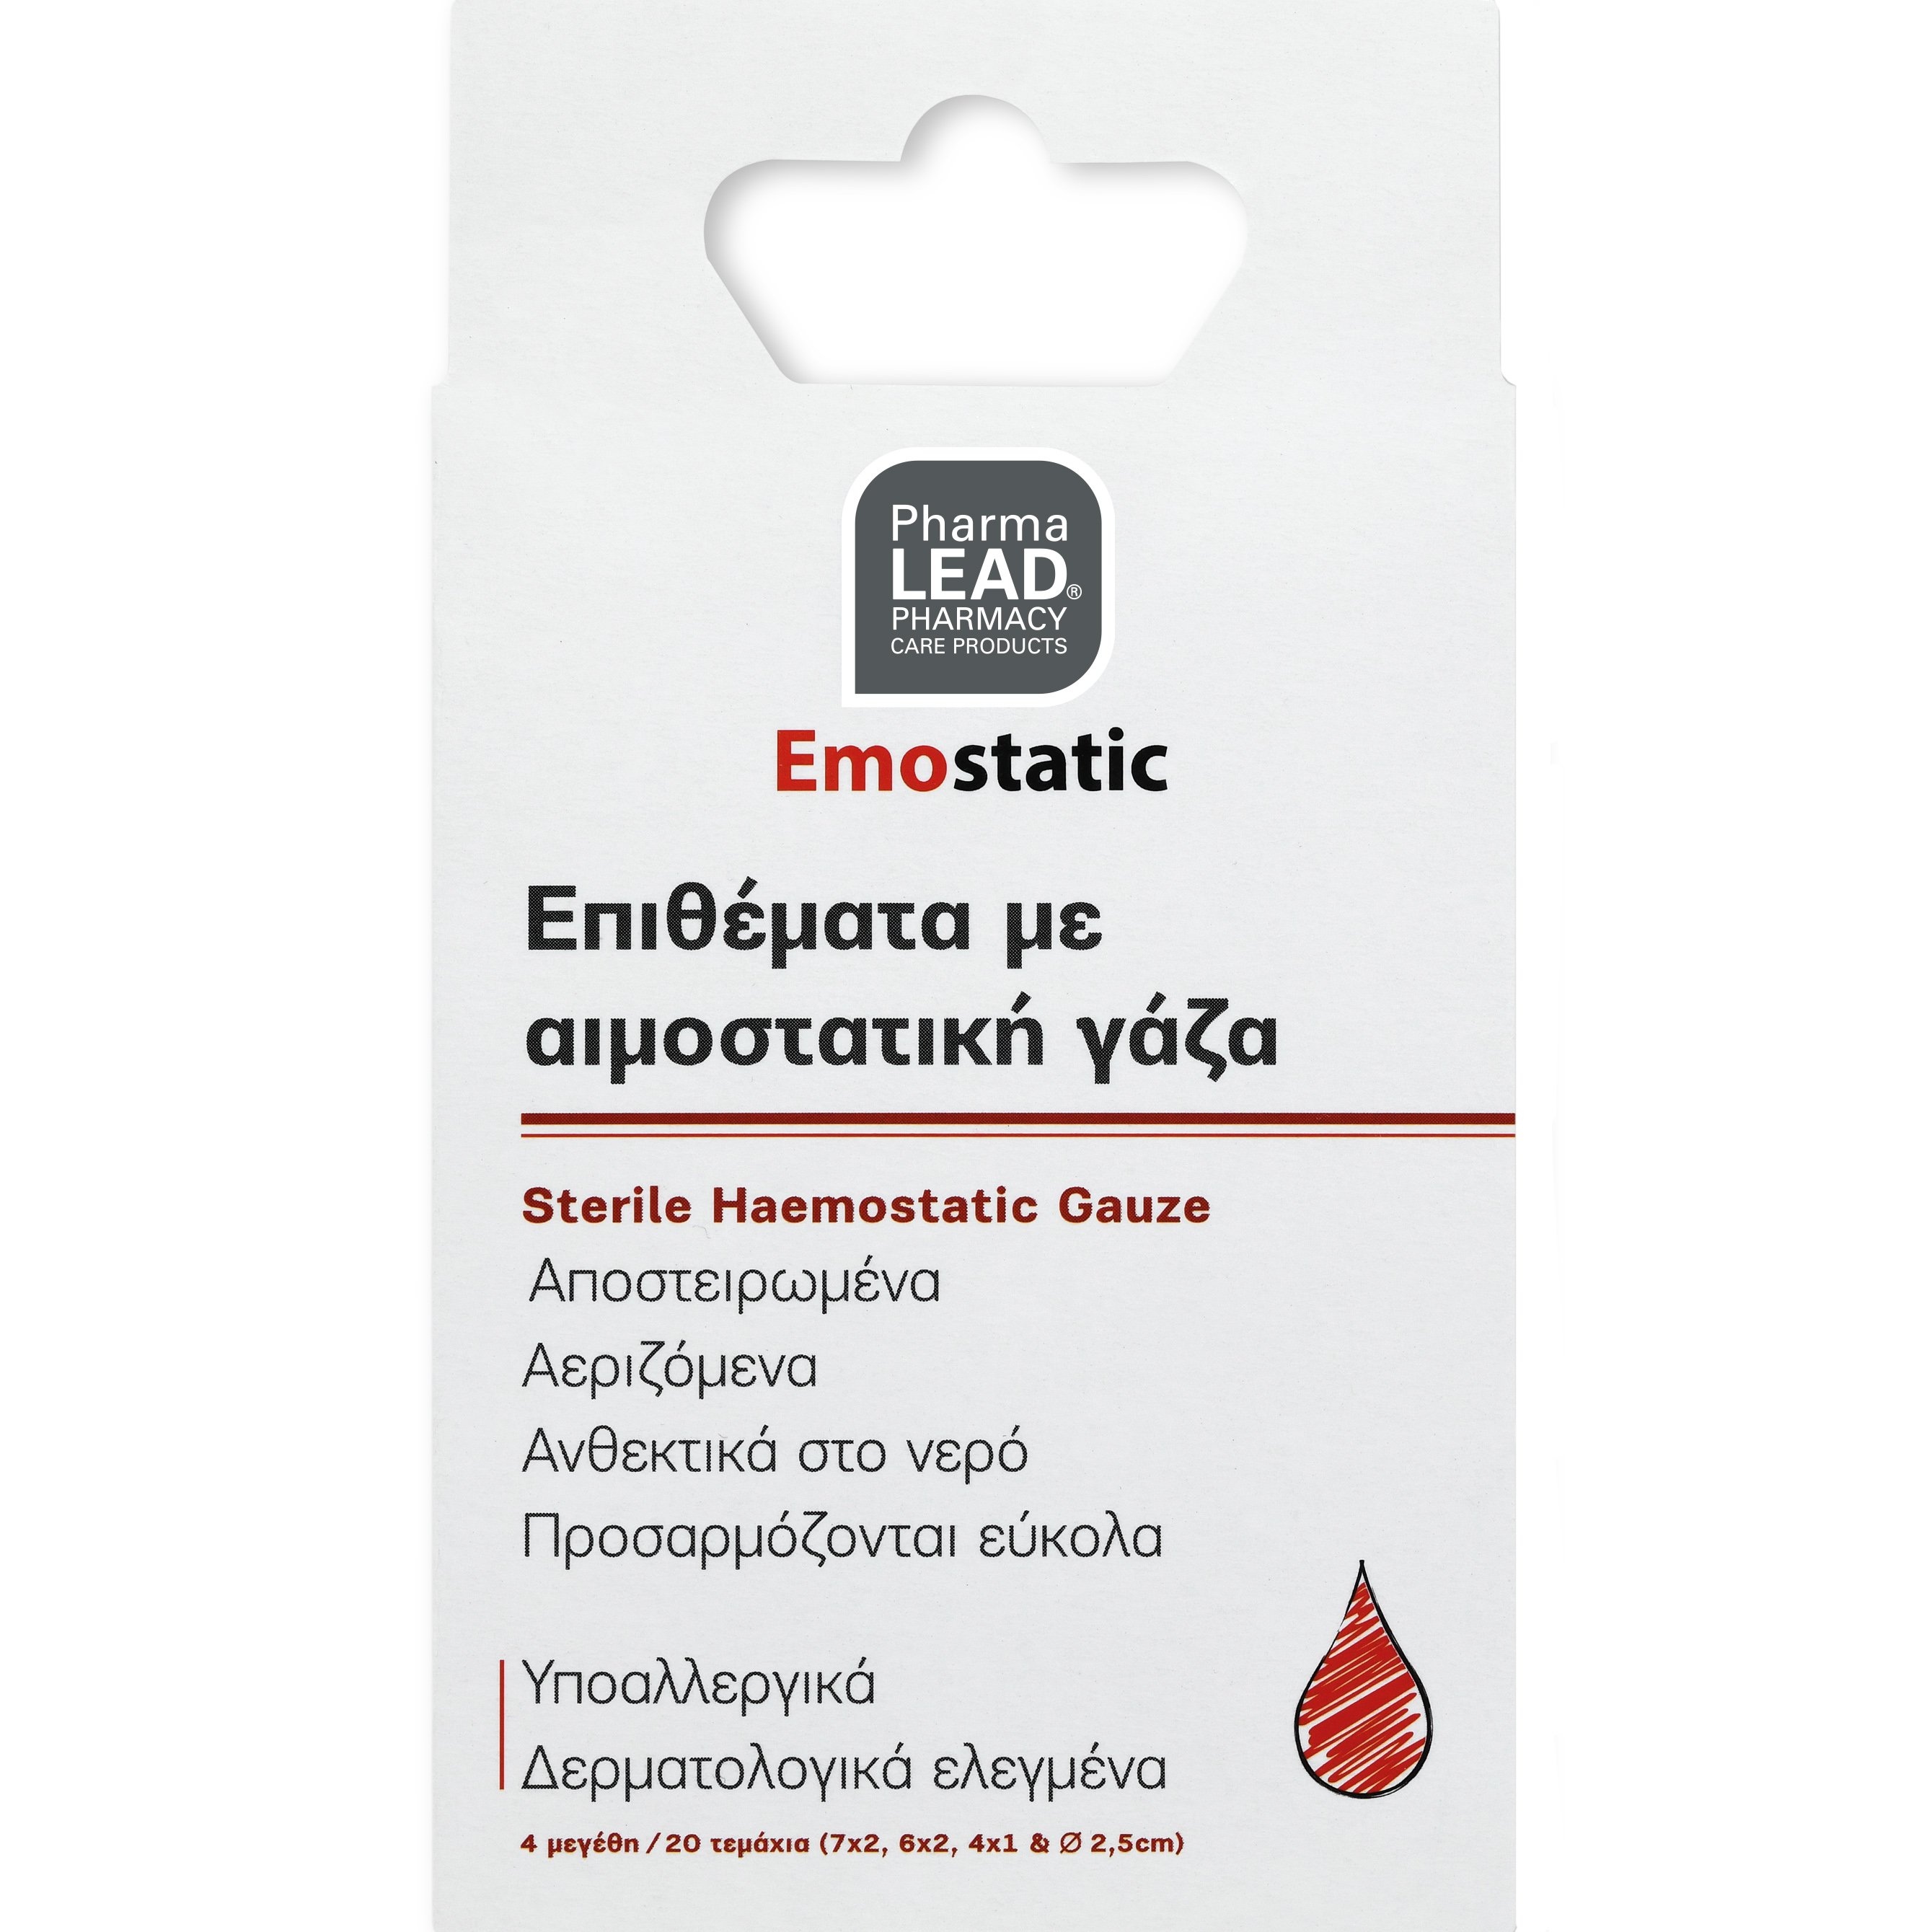 PharmaLead Pharmalead Emostatic Sterile Haemostatic Gauze Strips Επιθέματα με Αιμοστατική Γάζα για Αντιμετώπιση Πληγών σε 4 Διαφορετικά Μεγέθη 20 Τεμάχια